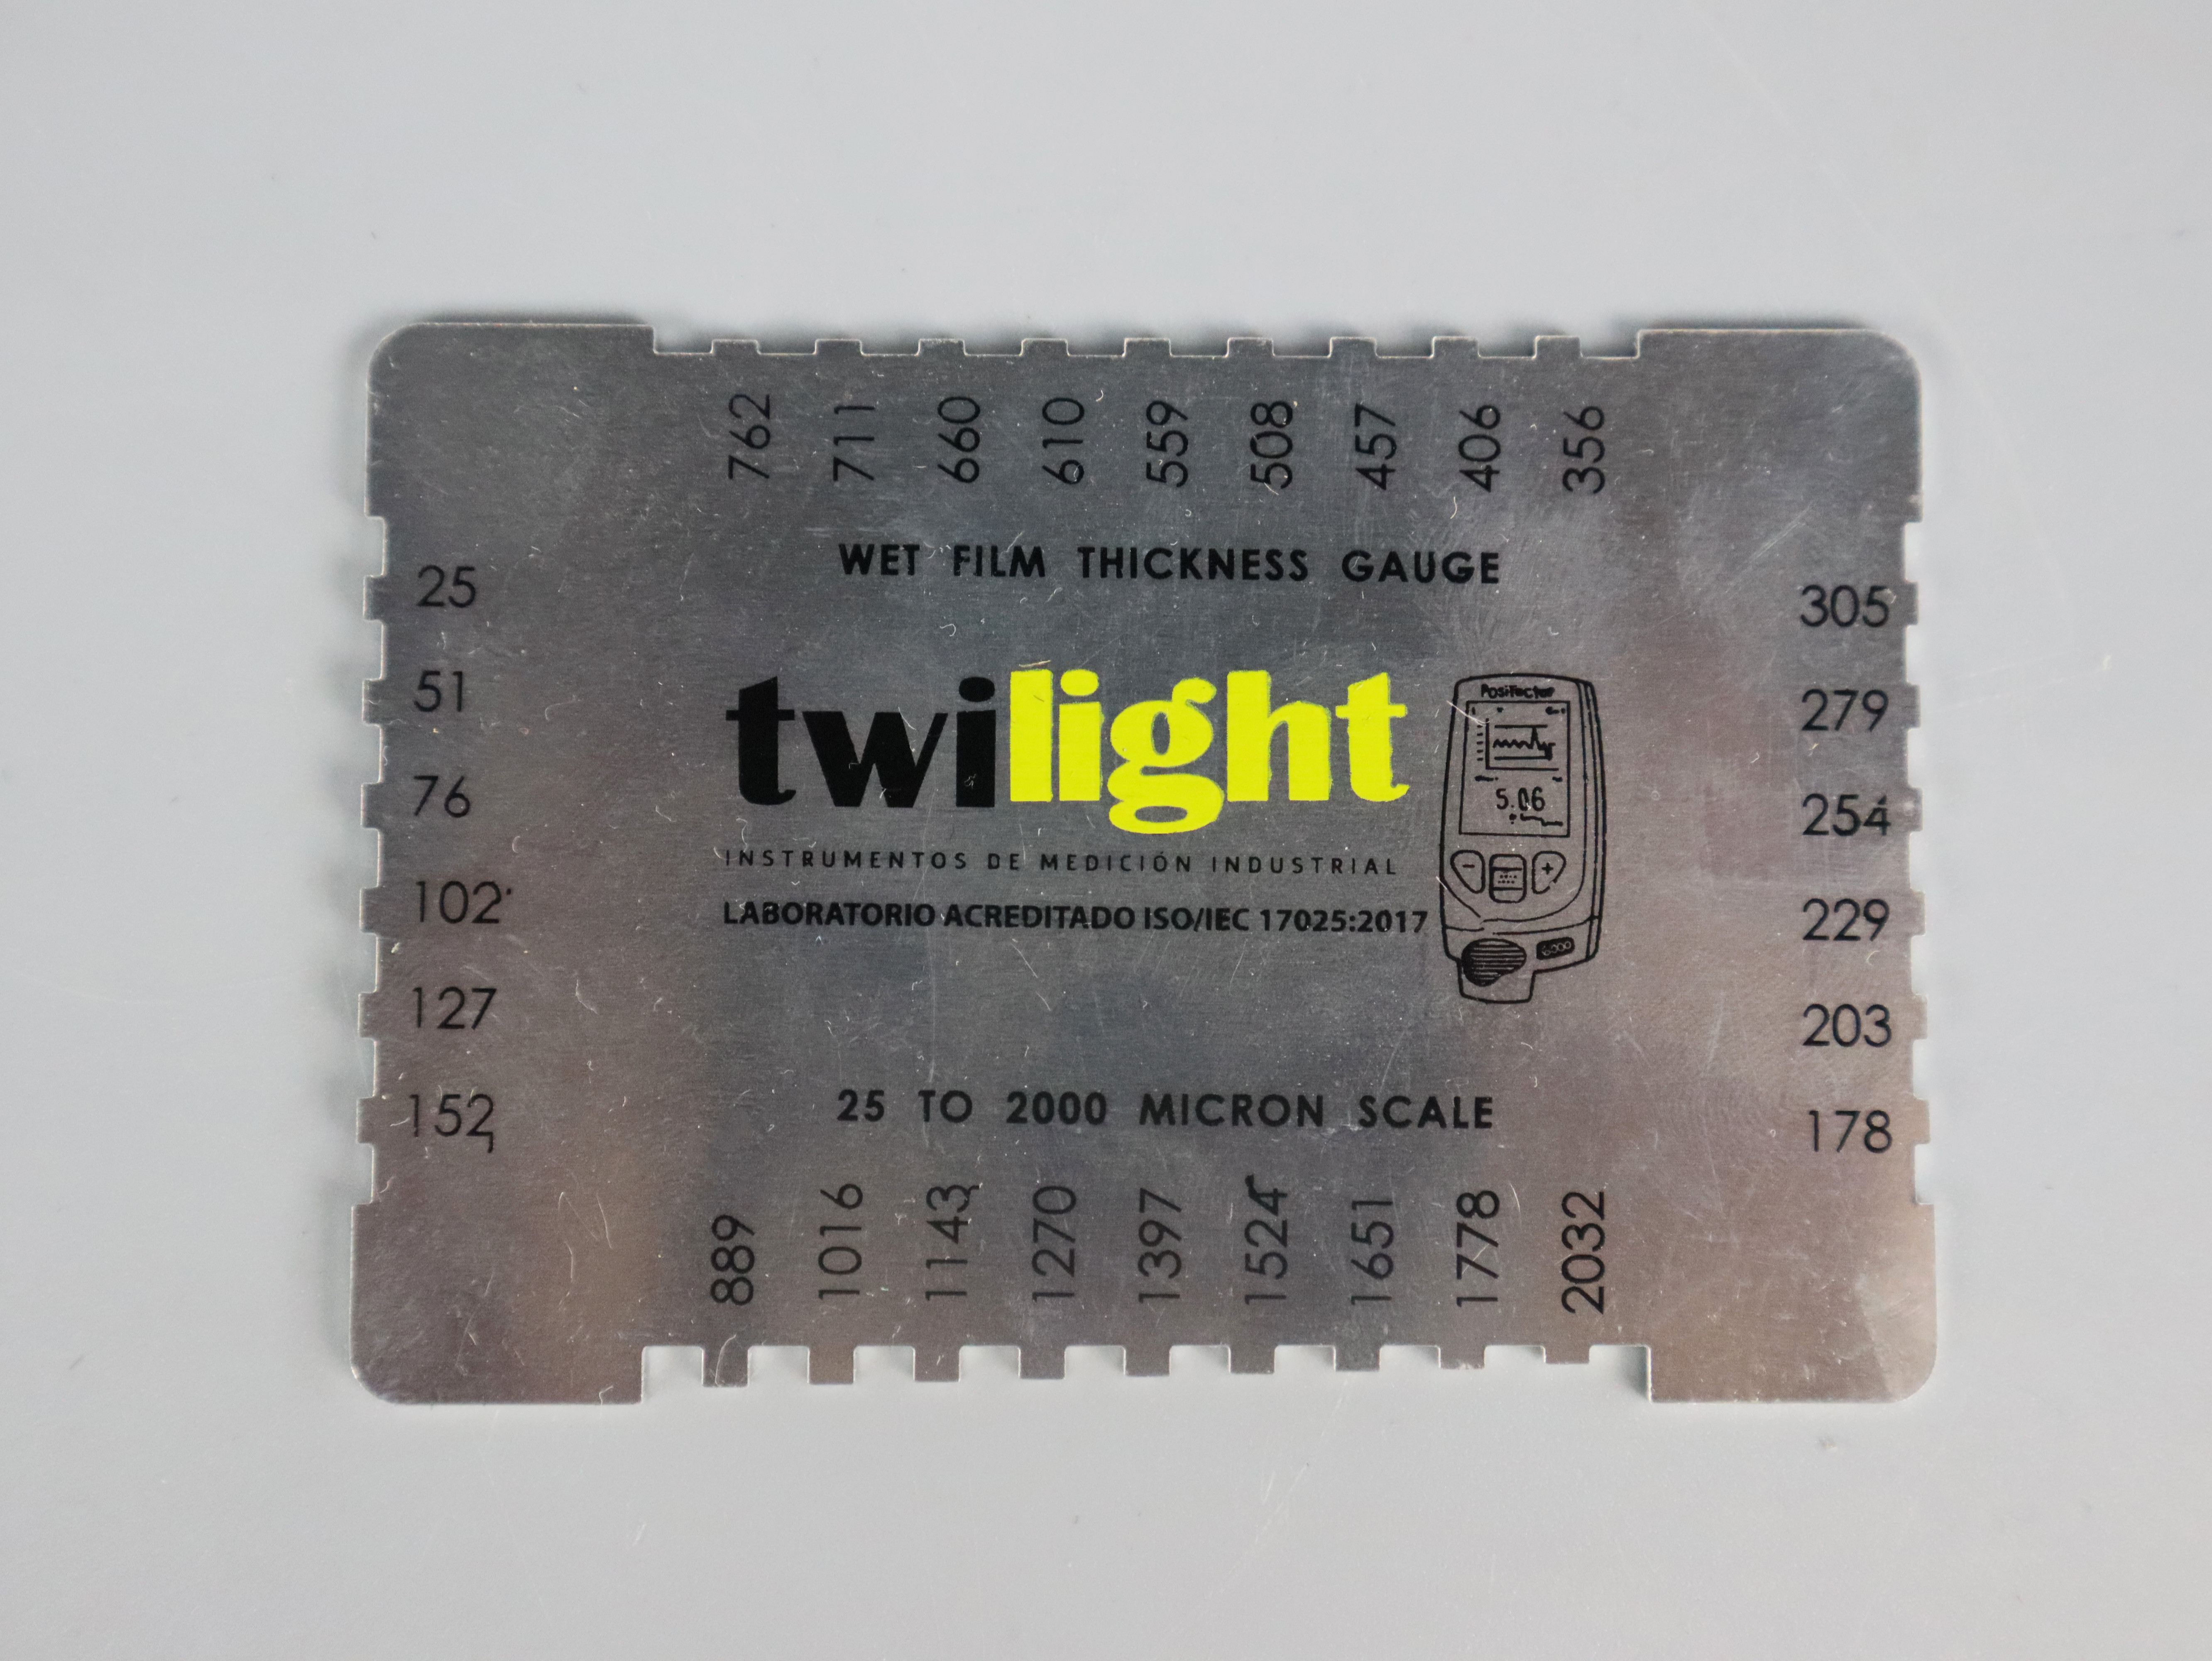 ZH-WFGR-1-peine-de-espesor-hu-medo-de-aluminio-logotipo-twilight-rango-1-80-mils-zh-jpg